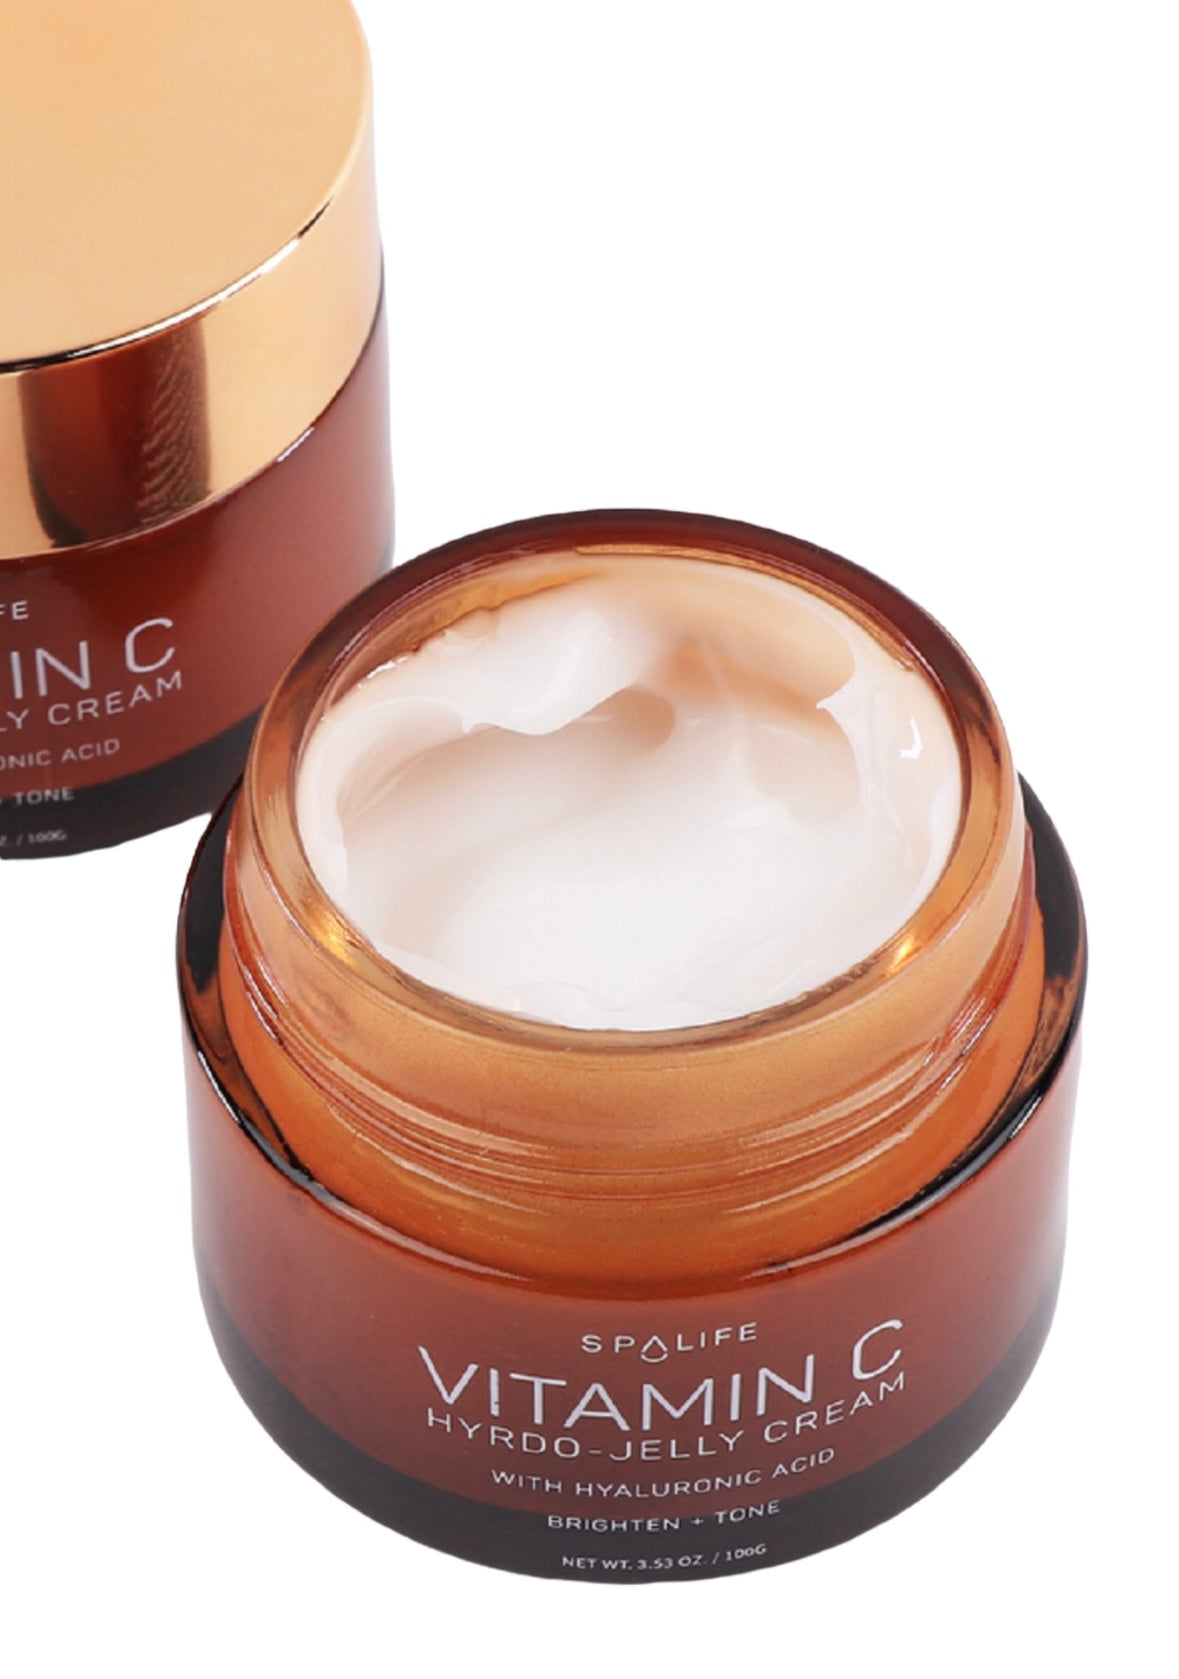 Brightening + Tone Vitamin C Hydro-Jelly Face Cream